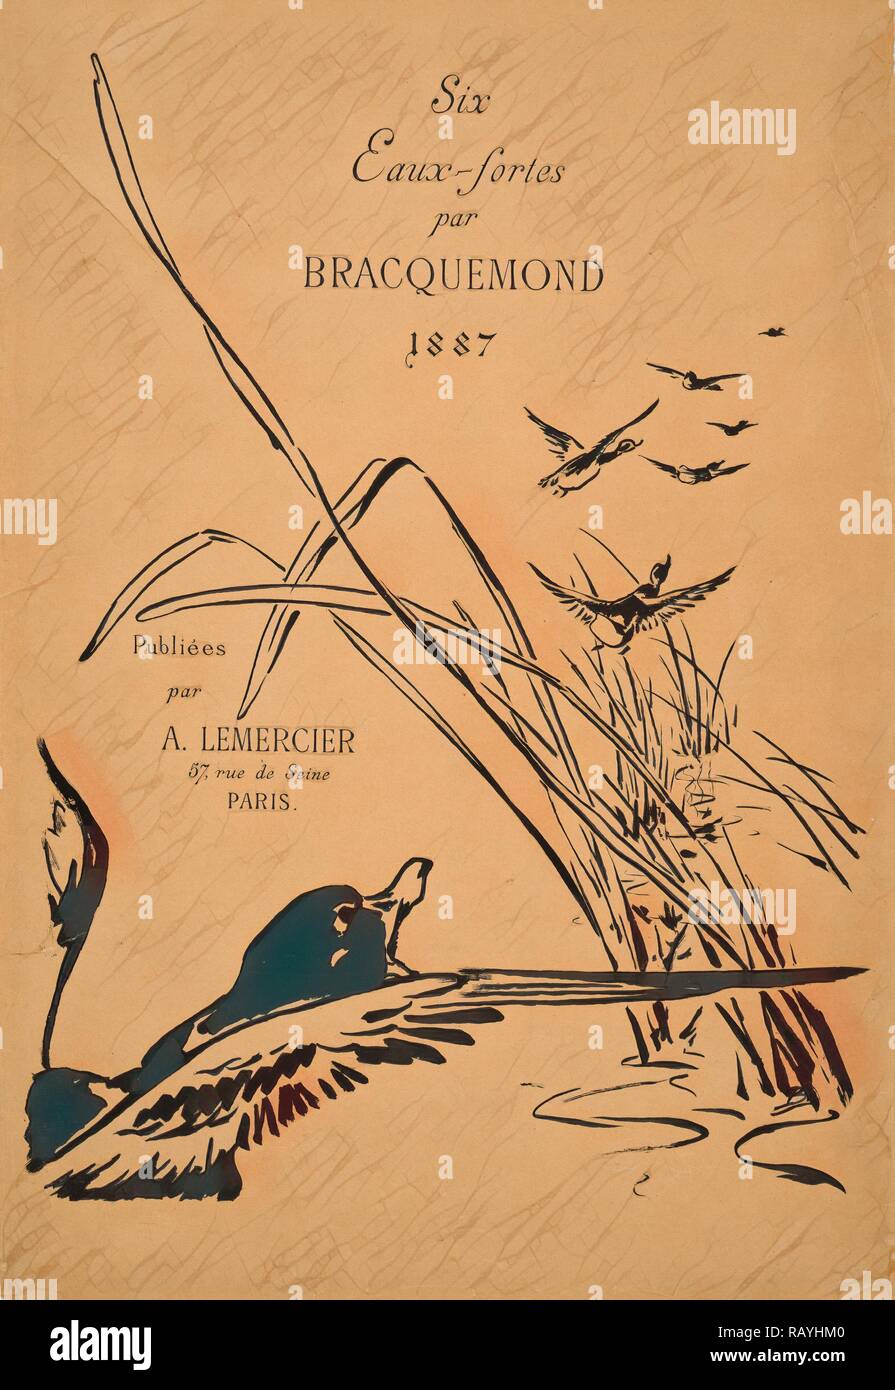 Félix Bracquemond (Französisch, 1833 - 1914). Abdeckung für sechs Eaux-fortes par Bracquemond, 1887, 1887. Lithographie neuerfundene Stockfoto